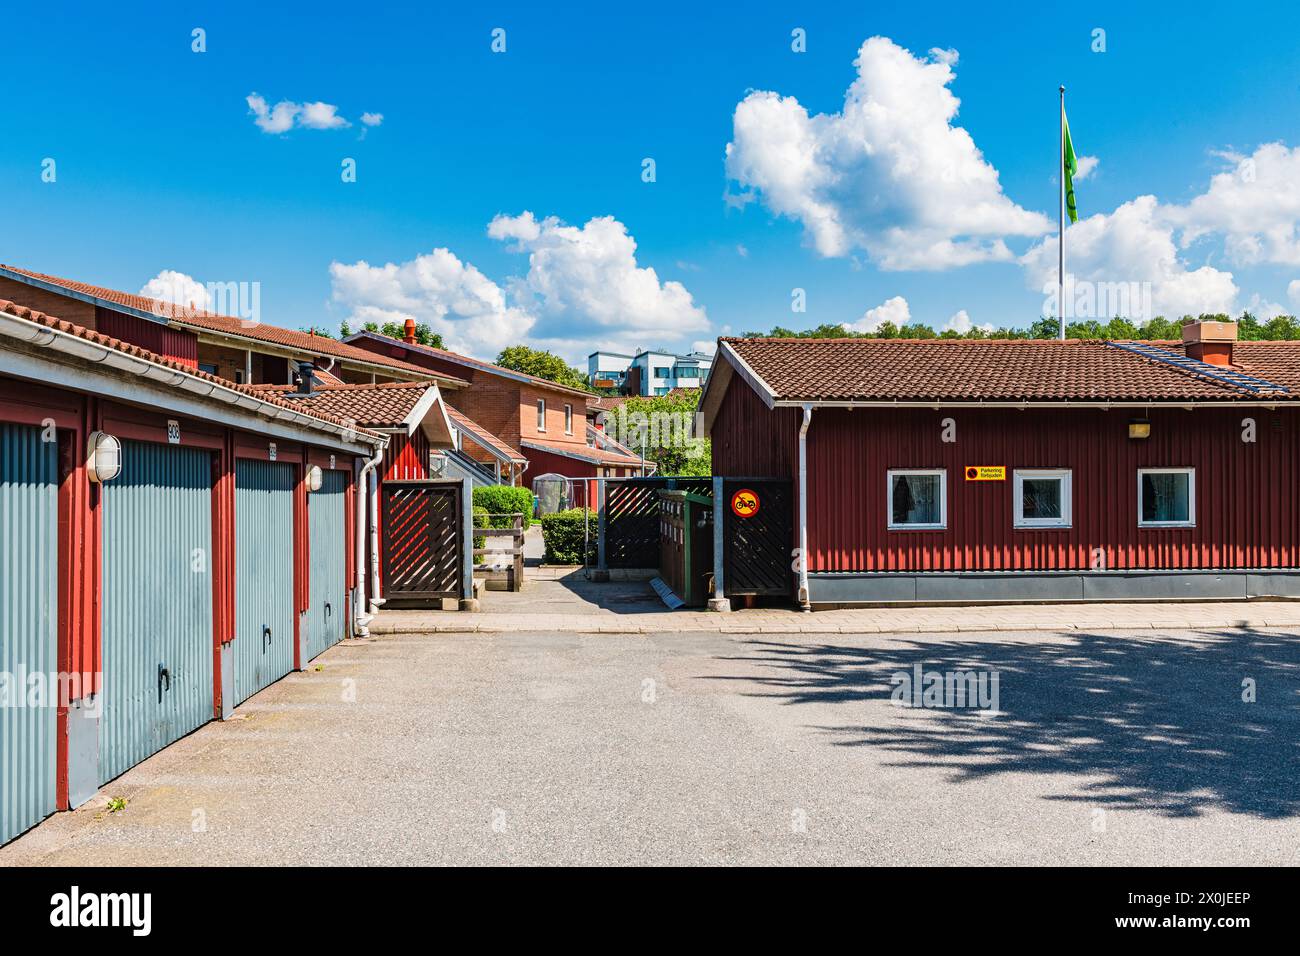 Un edificio rosso con una bandiera in alto si erge di fronte agli edifici residenziali di Mölndal, Svezia. L'impressionante facciata rossa cattura l'attenzione. Foto Stock